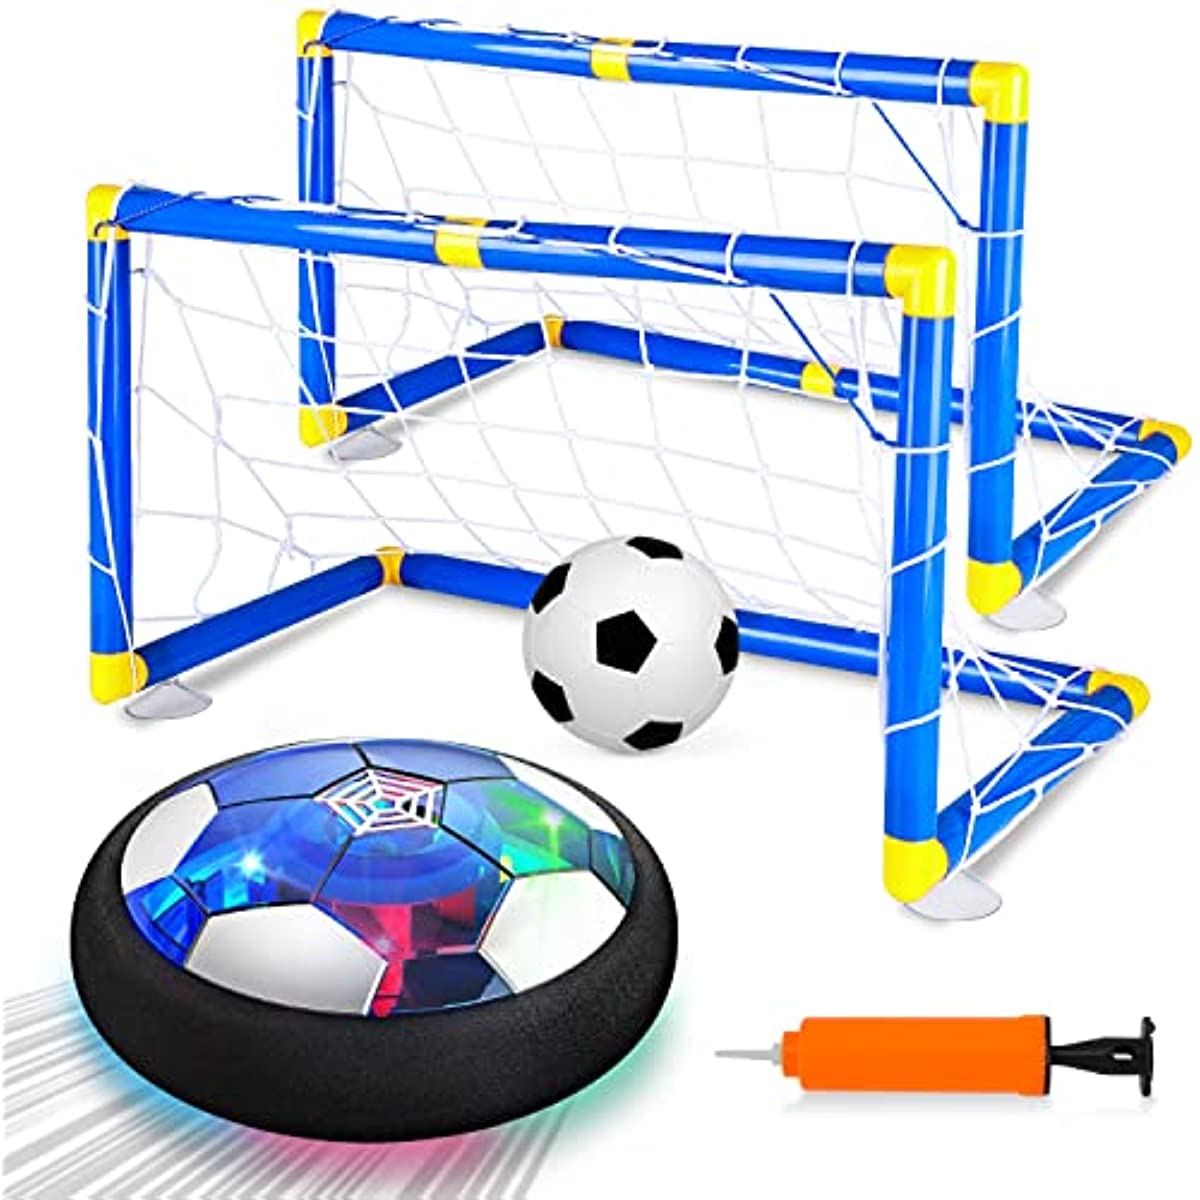 Jeux pour enfants Jouets Set Rechargeable Air Soccer Avec 2 Buts, Jouet de  Balle Avec Lumière Led